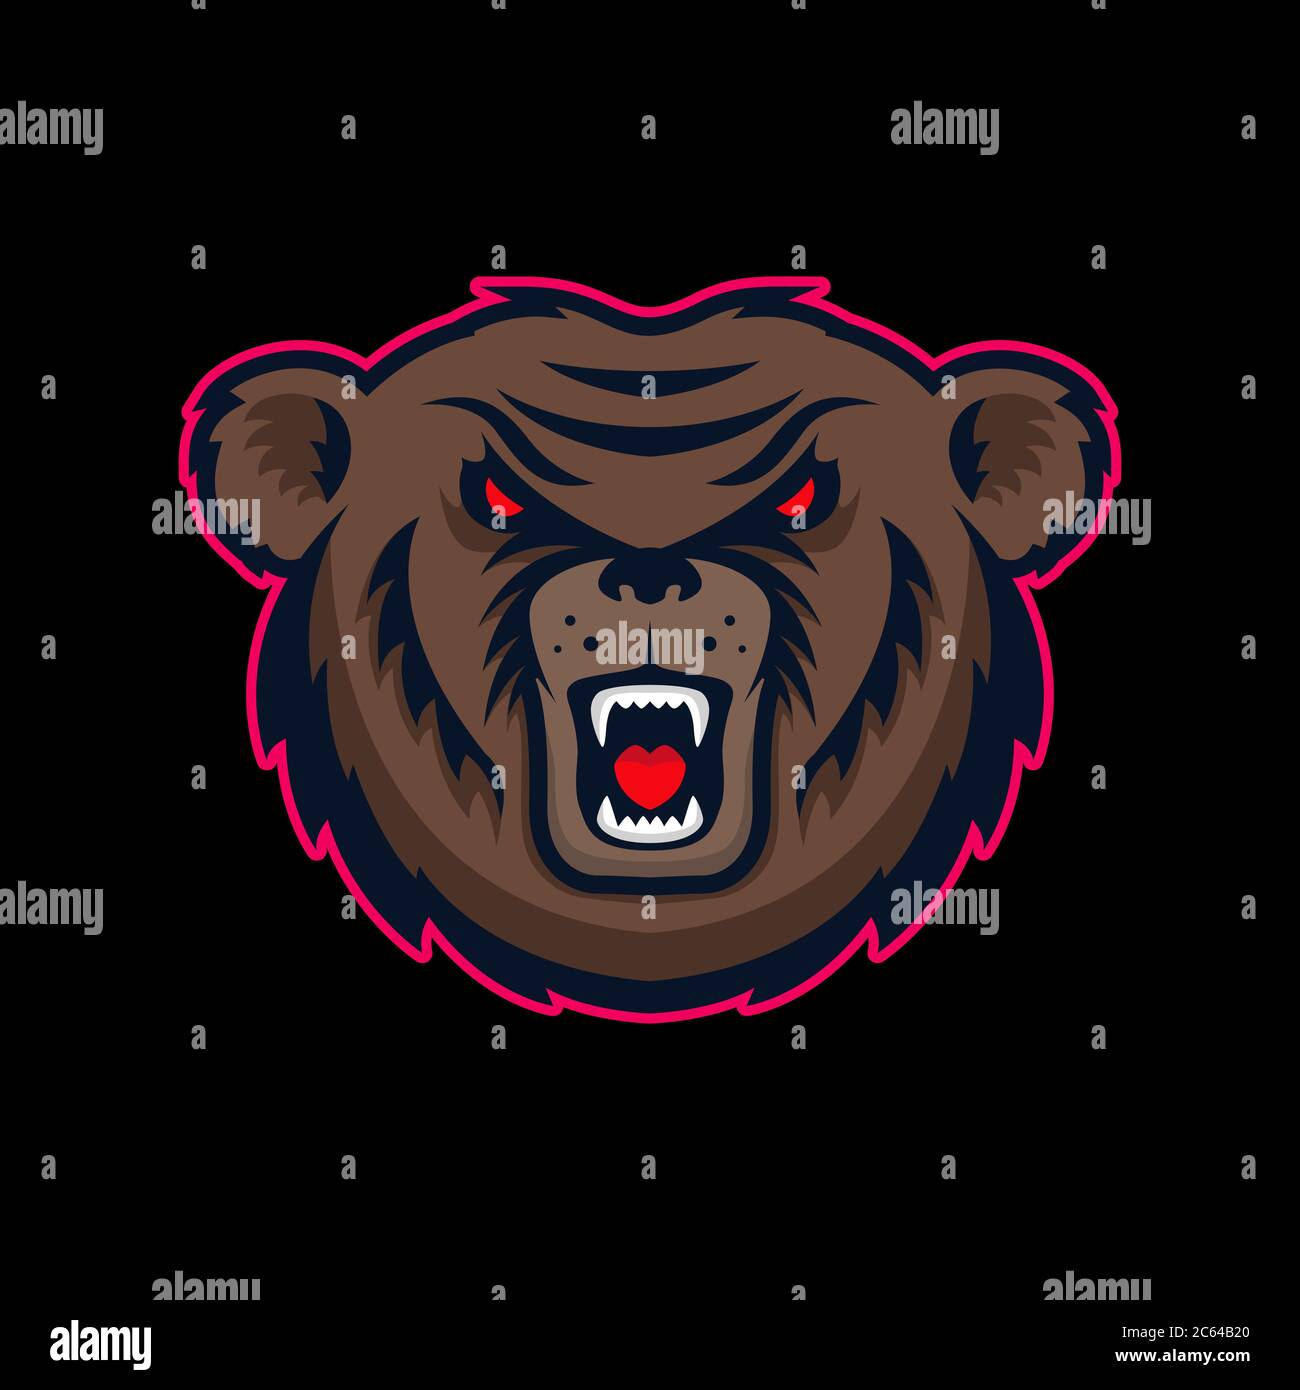 Illustrazione della testa della mascotte dell'orso arrabbiato. Elemento di design per logo, etichetta, cartello, poster, t-shirt. Illustrazione vettoriale Illustrazione Vettoriale